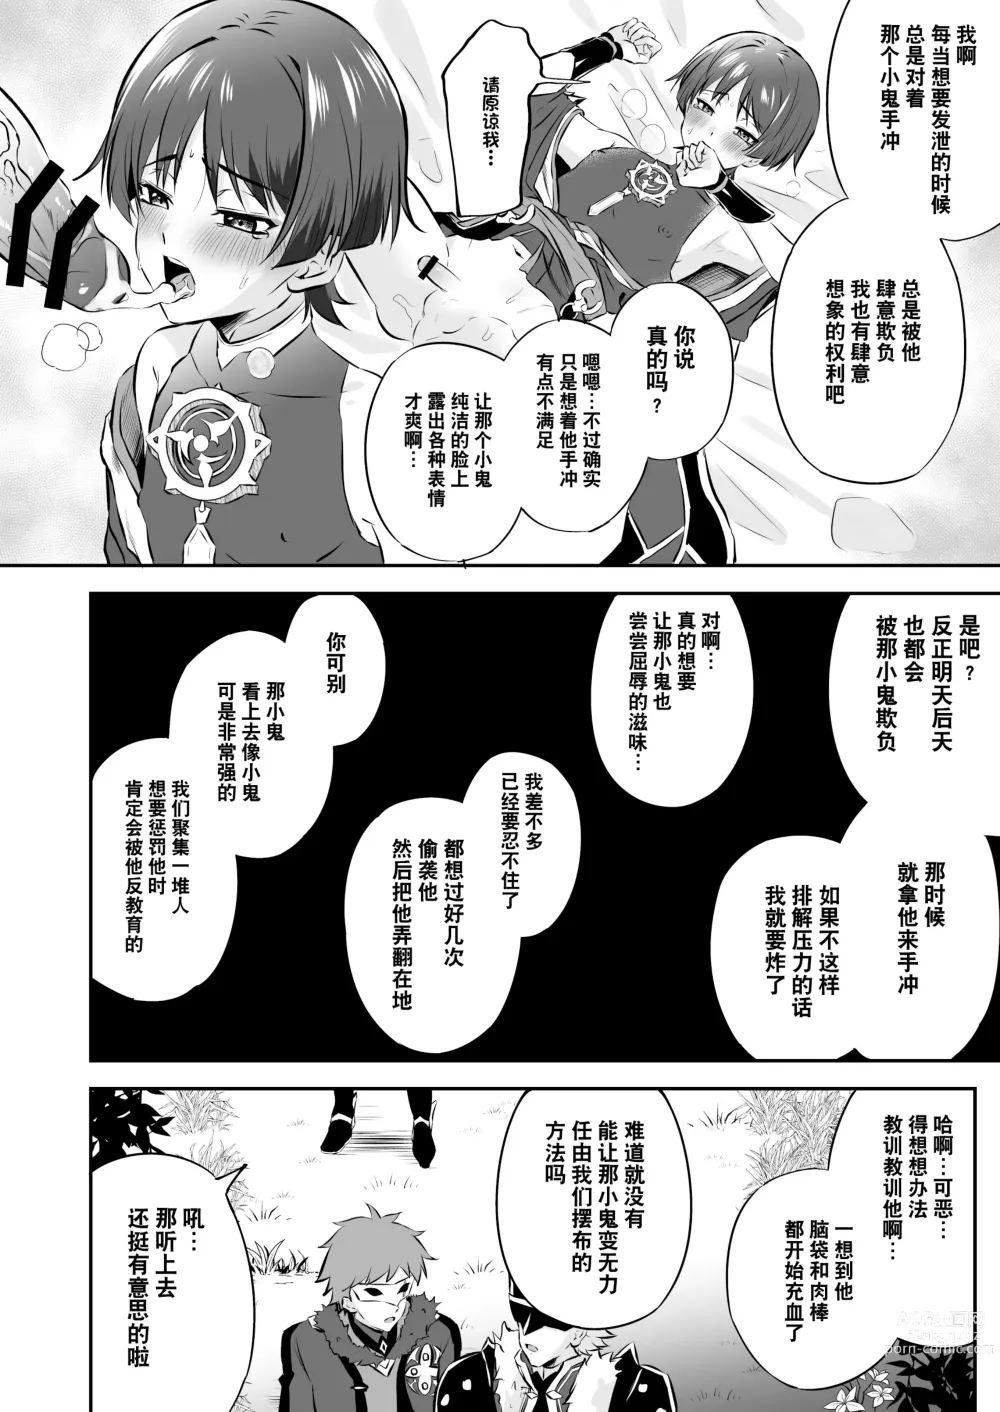 Page 7 of doujinshi  散兵大人哪怕是因为药物兴奋也不可能任由愚人众肆意摆布的吧